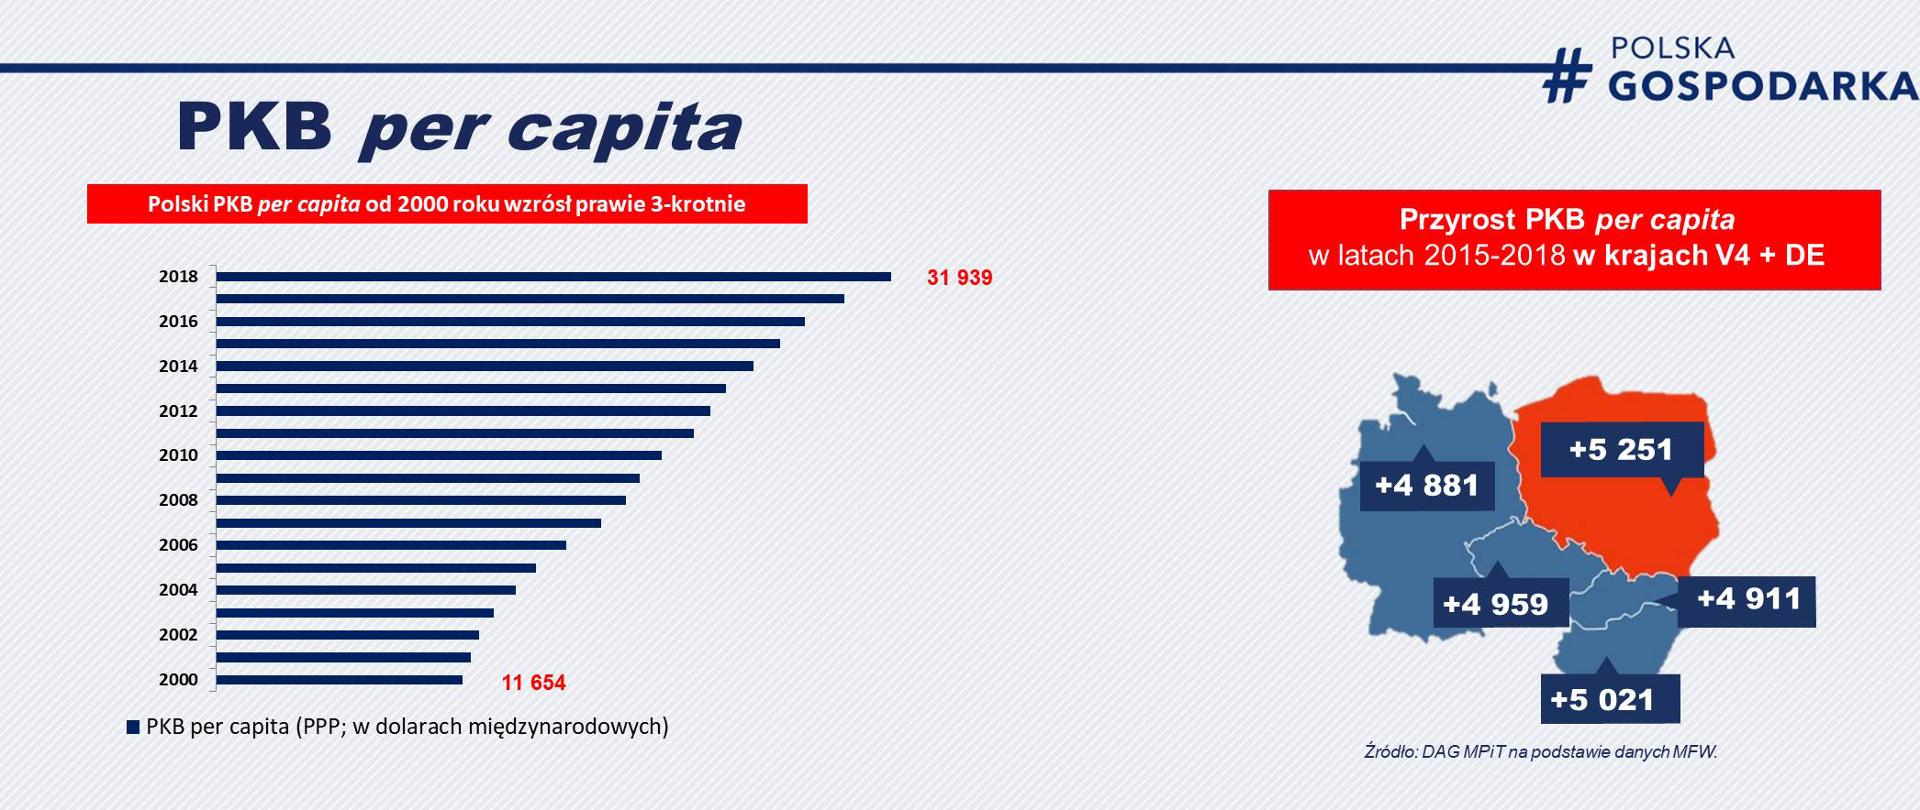 na szarym tle wykres przedstawiający w zrost polskiego PKB per capita w latach 2000-2018 oraz mapę naszego regionu - porównanie Polski z sąsiadami 